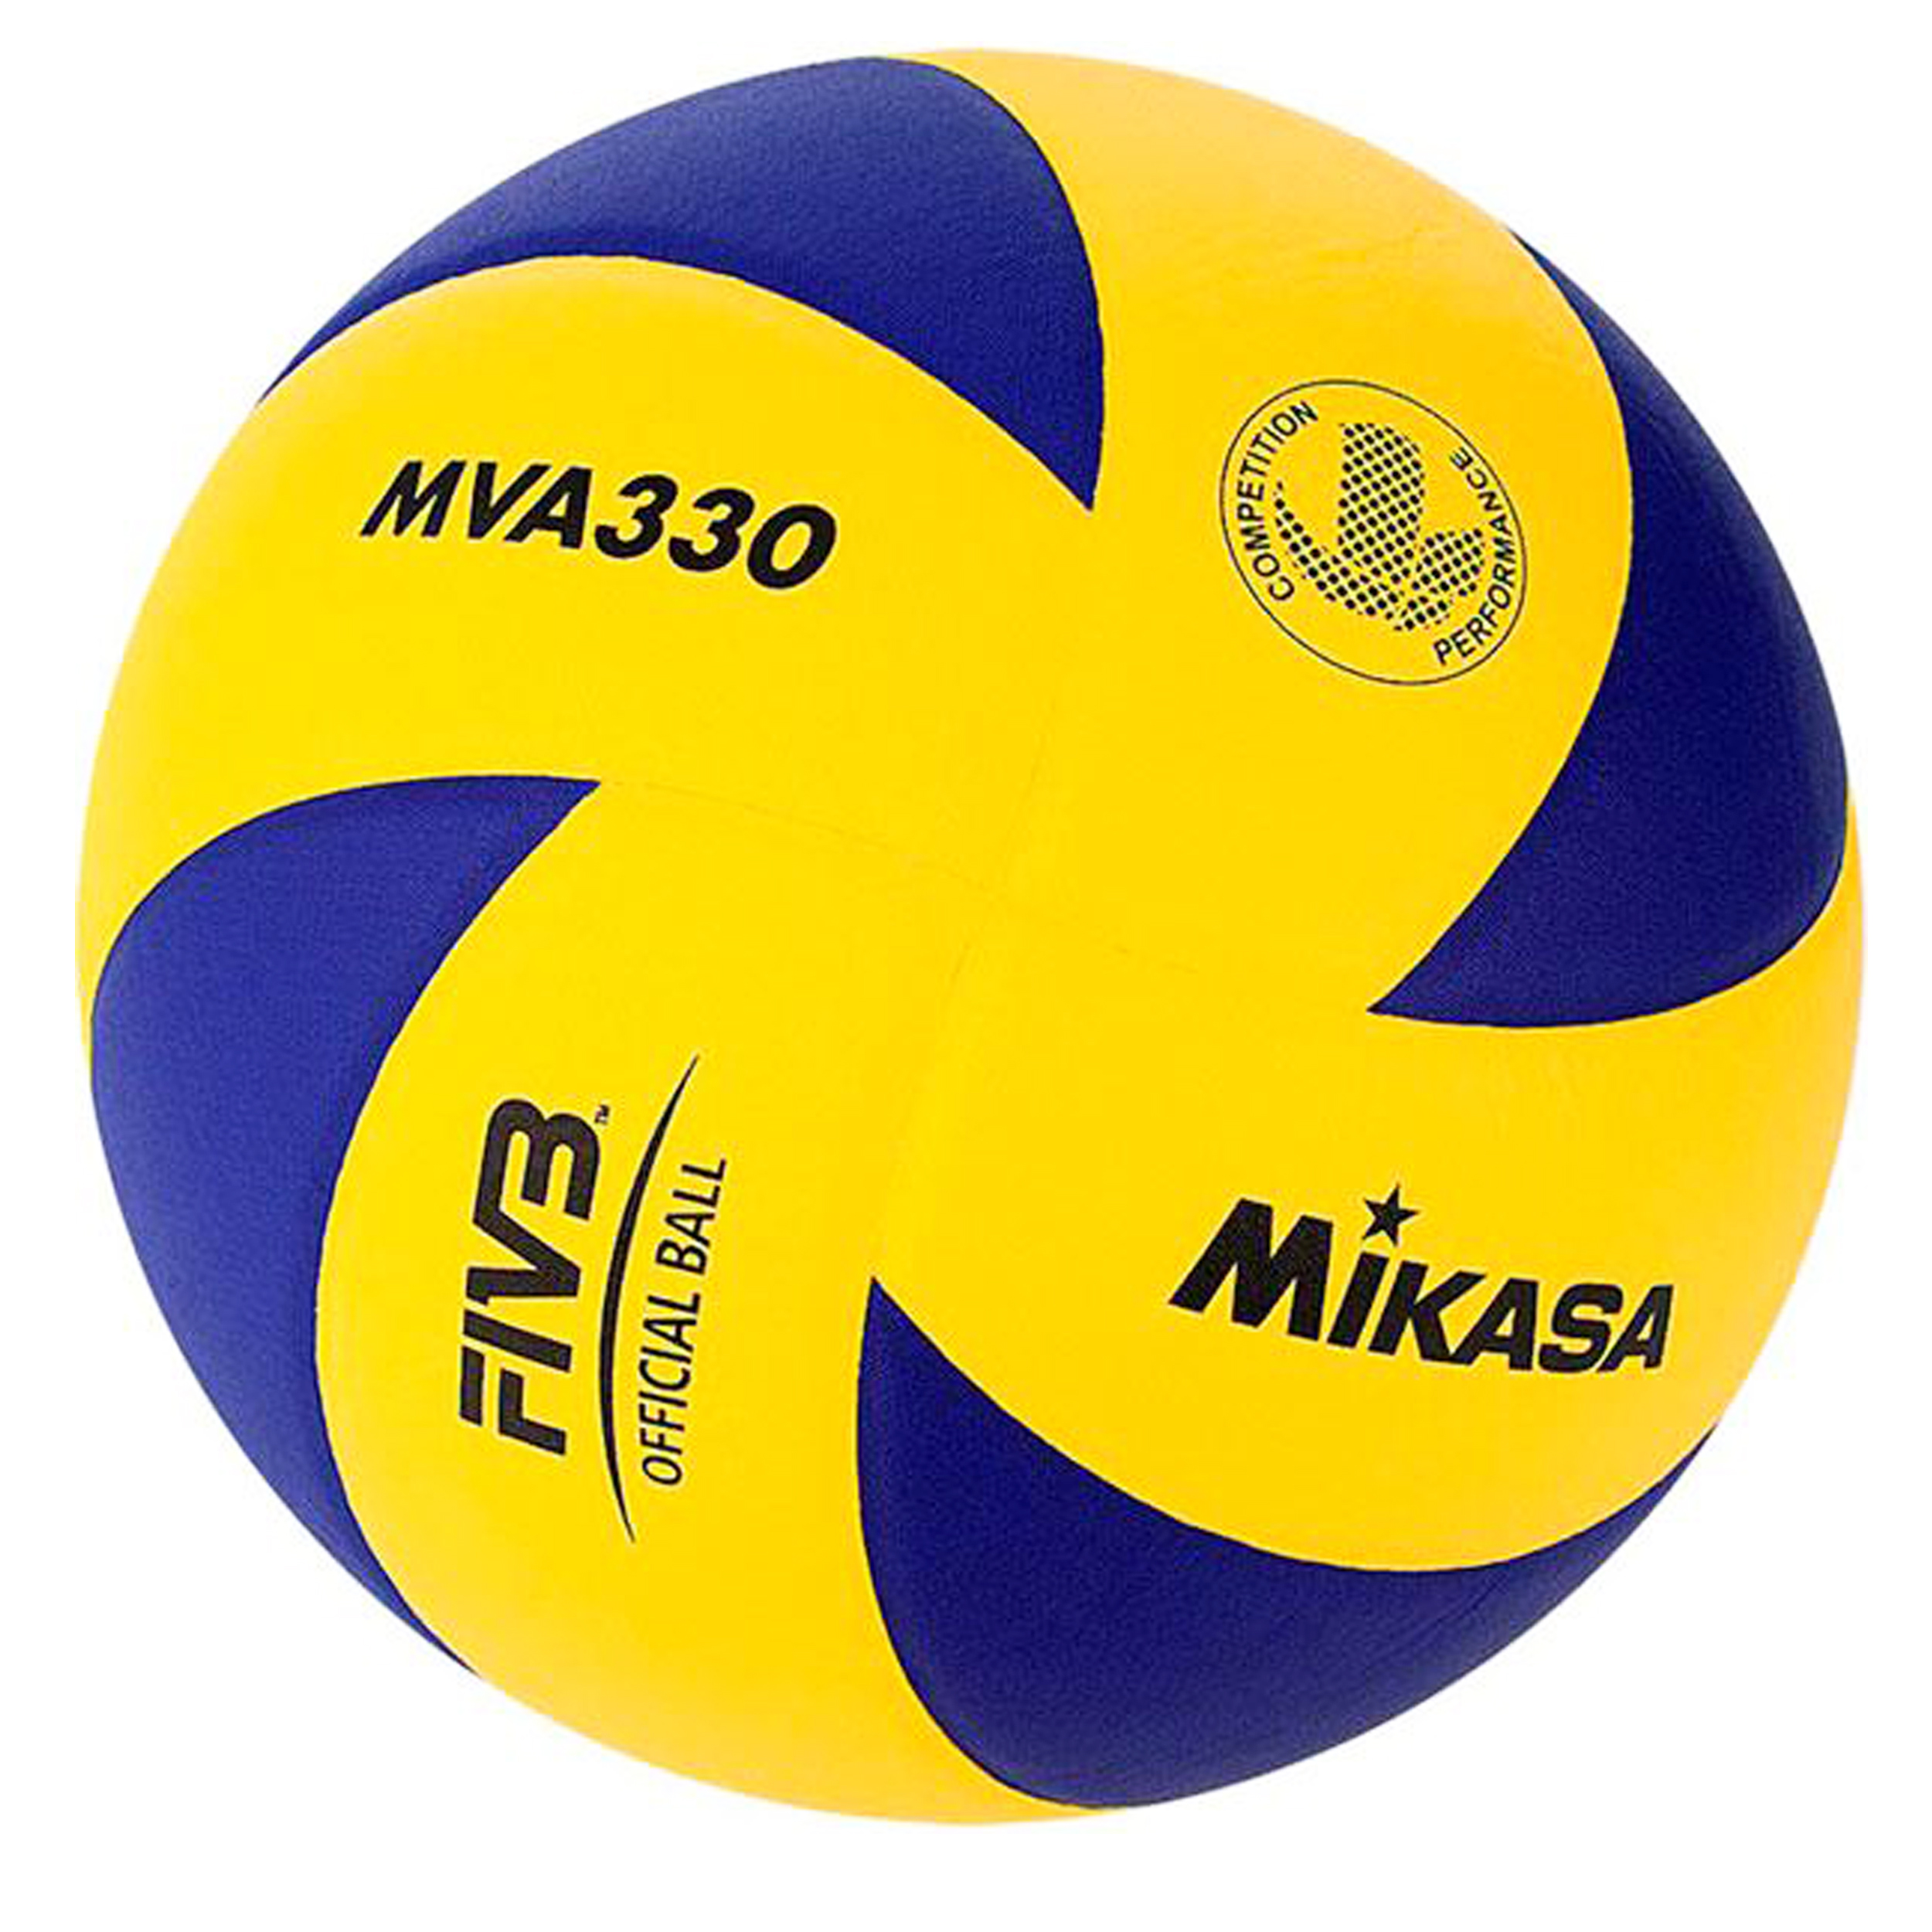 توپ والیبال میکاسا مدل MVA330